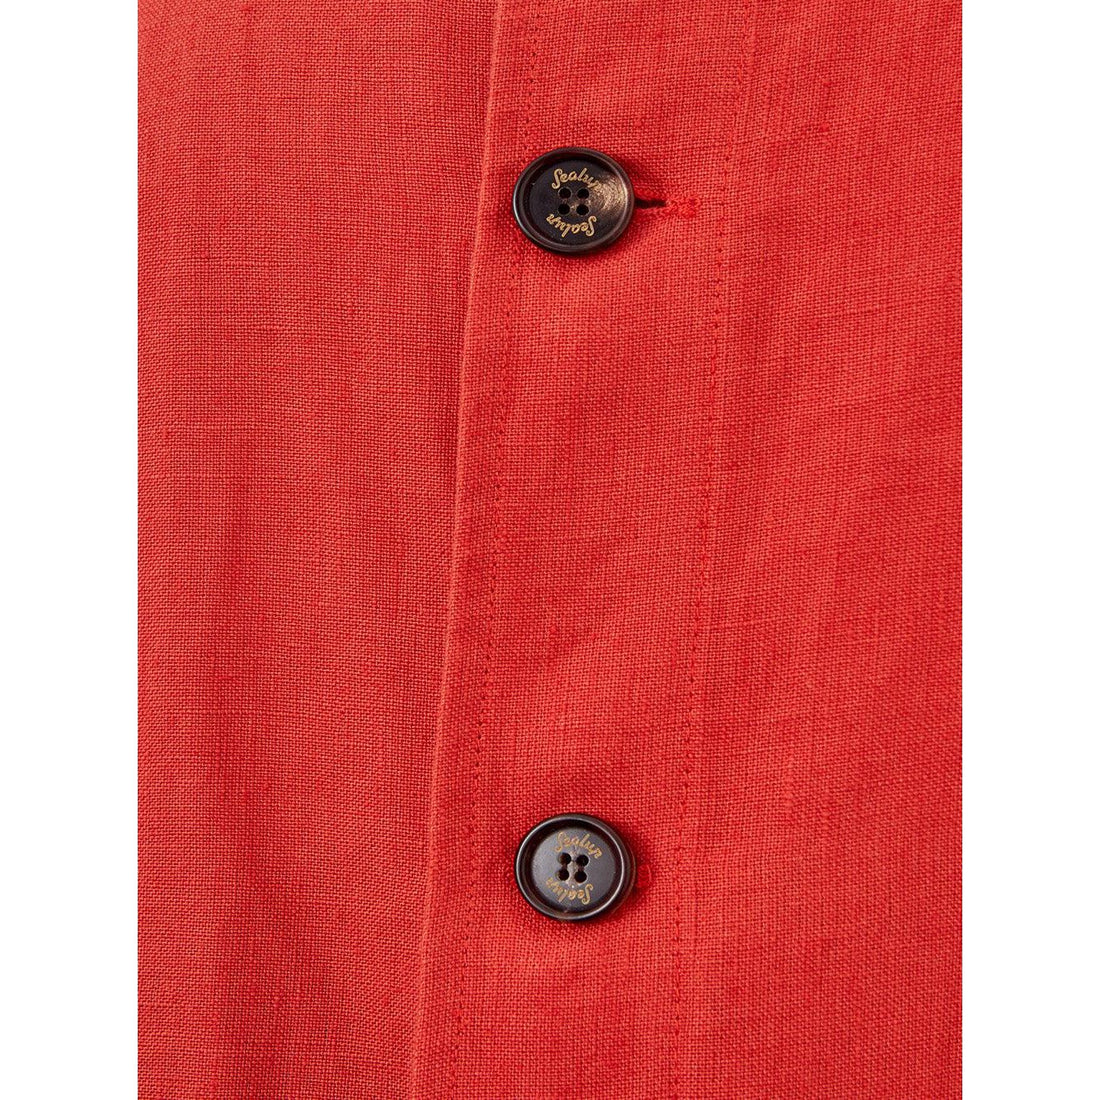 Sealup Orange Cropped Jacket in Linen Effect